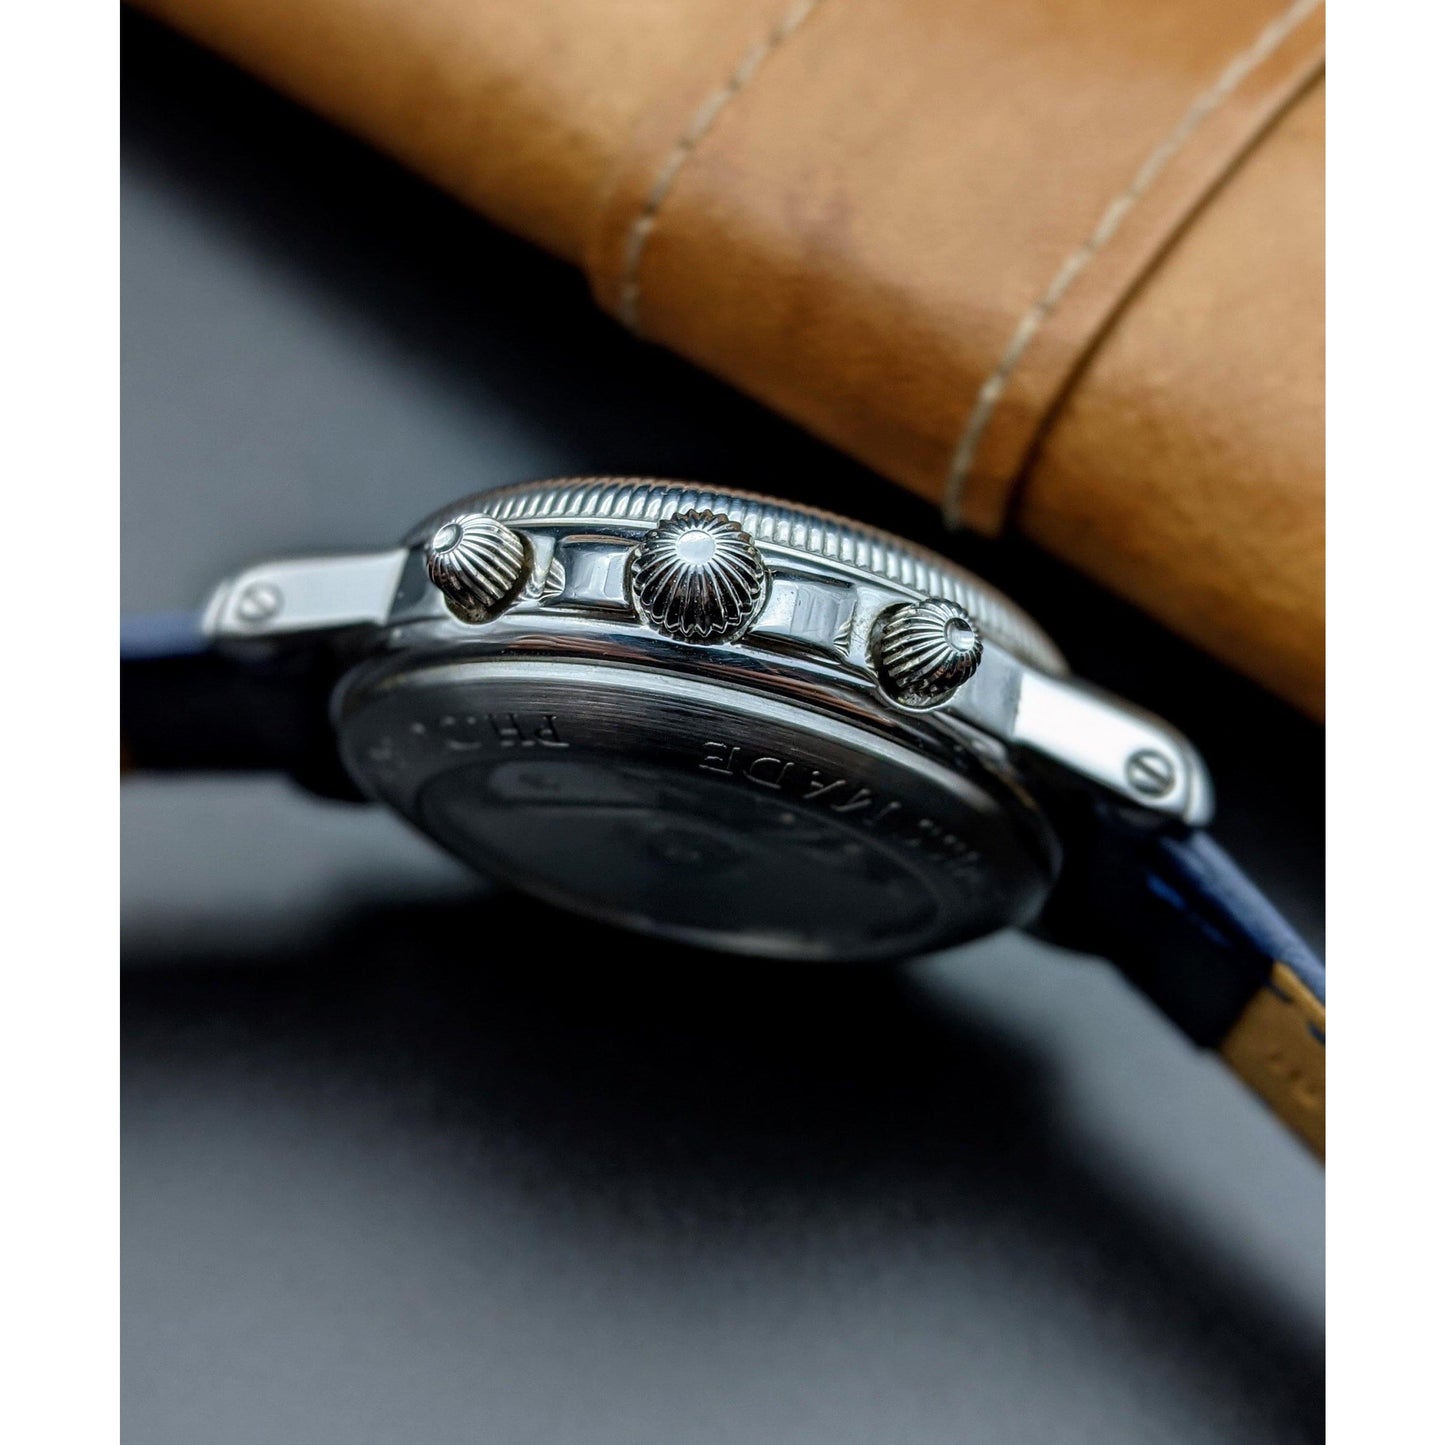 DuBois 1785 Montre Cannele Sport Automatic Chronograph Watch